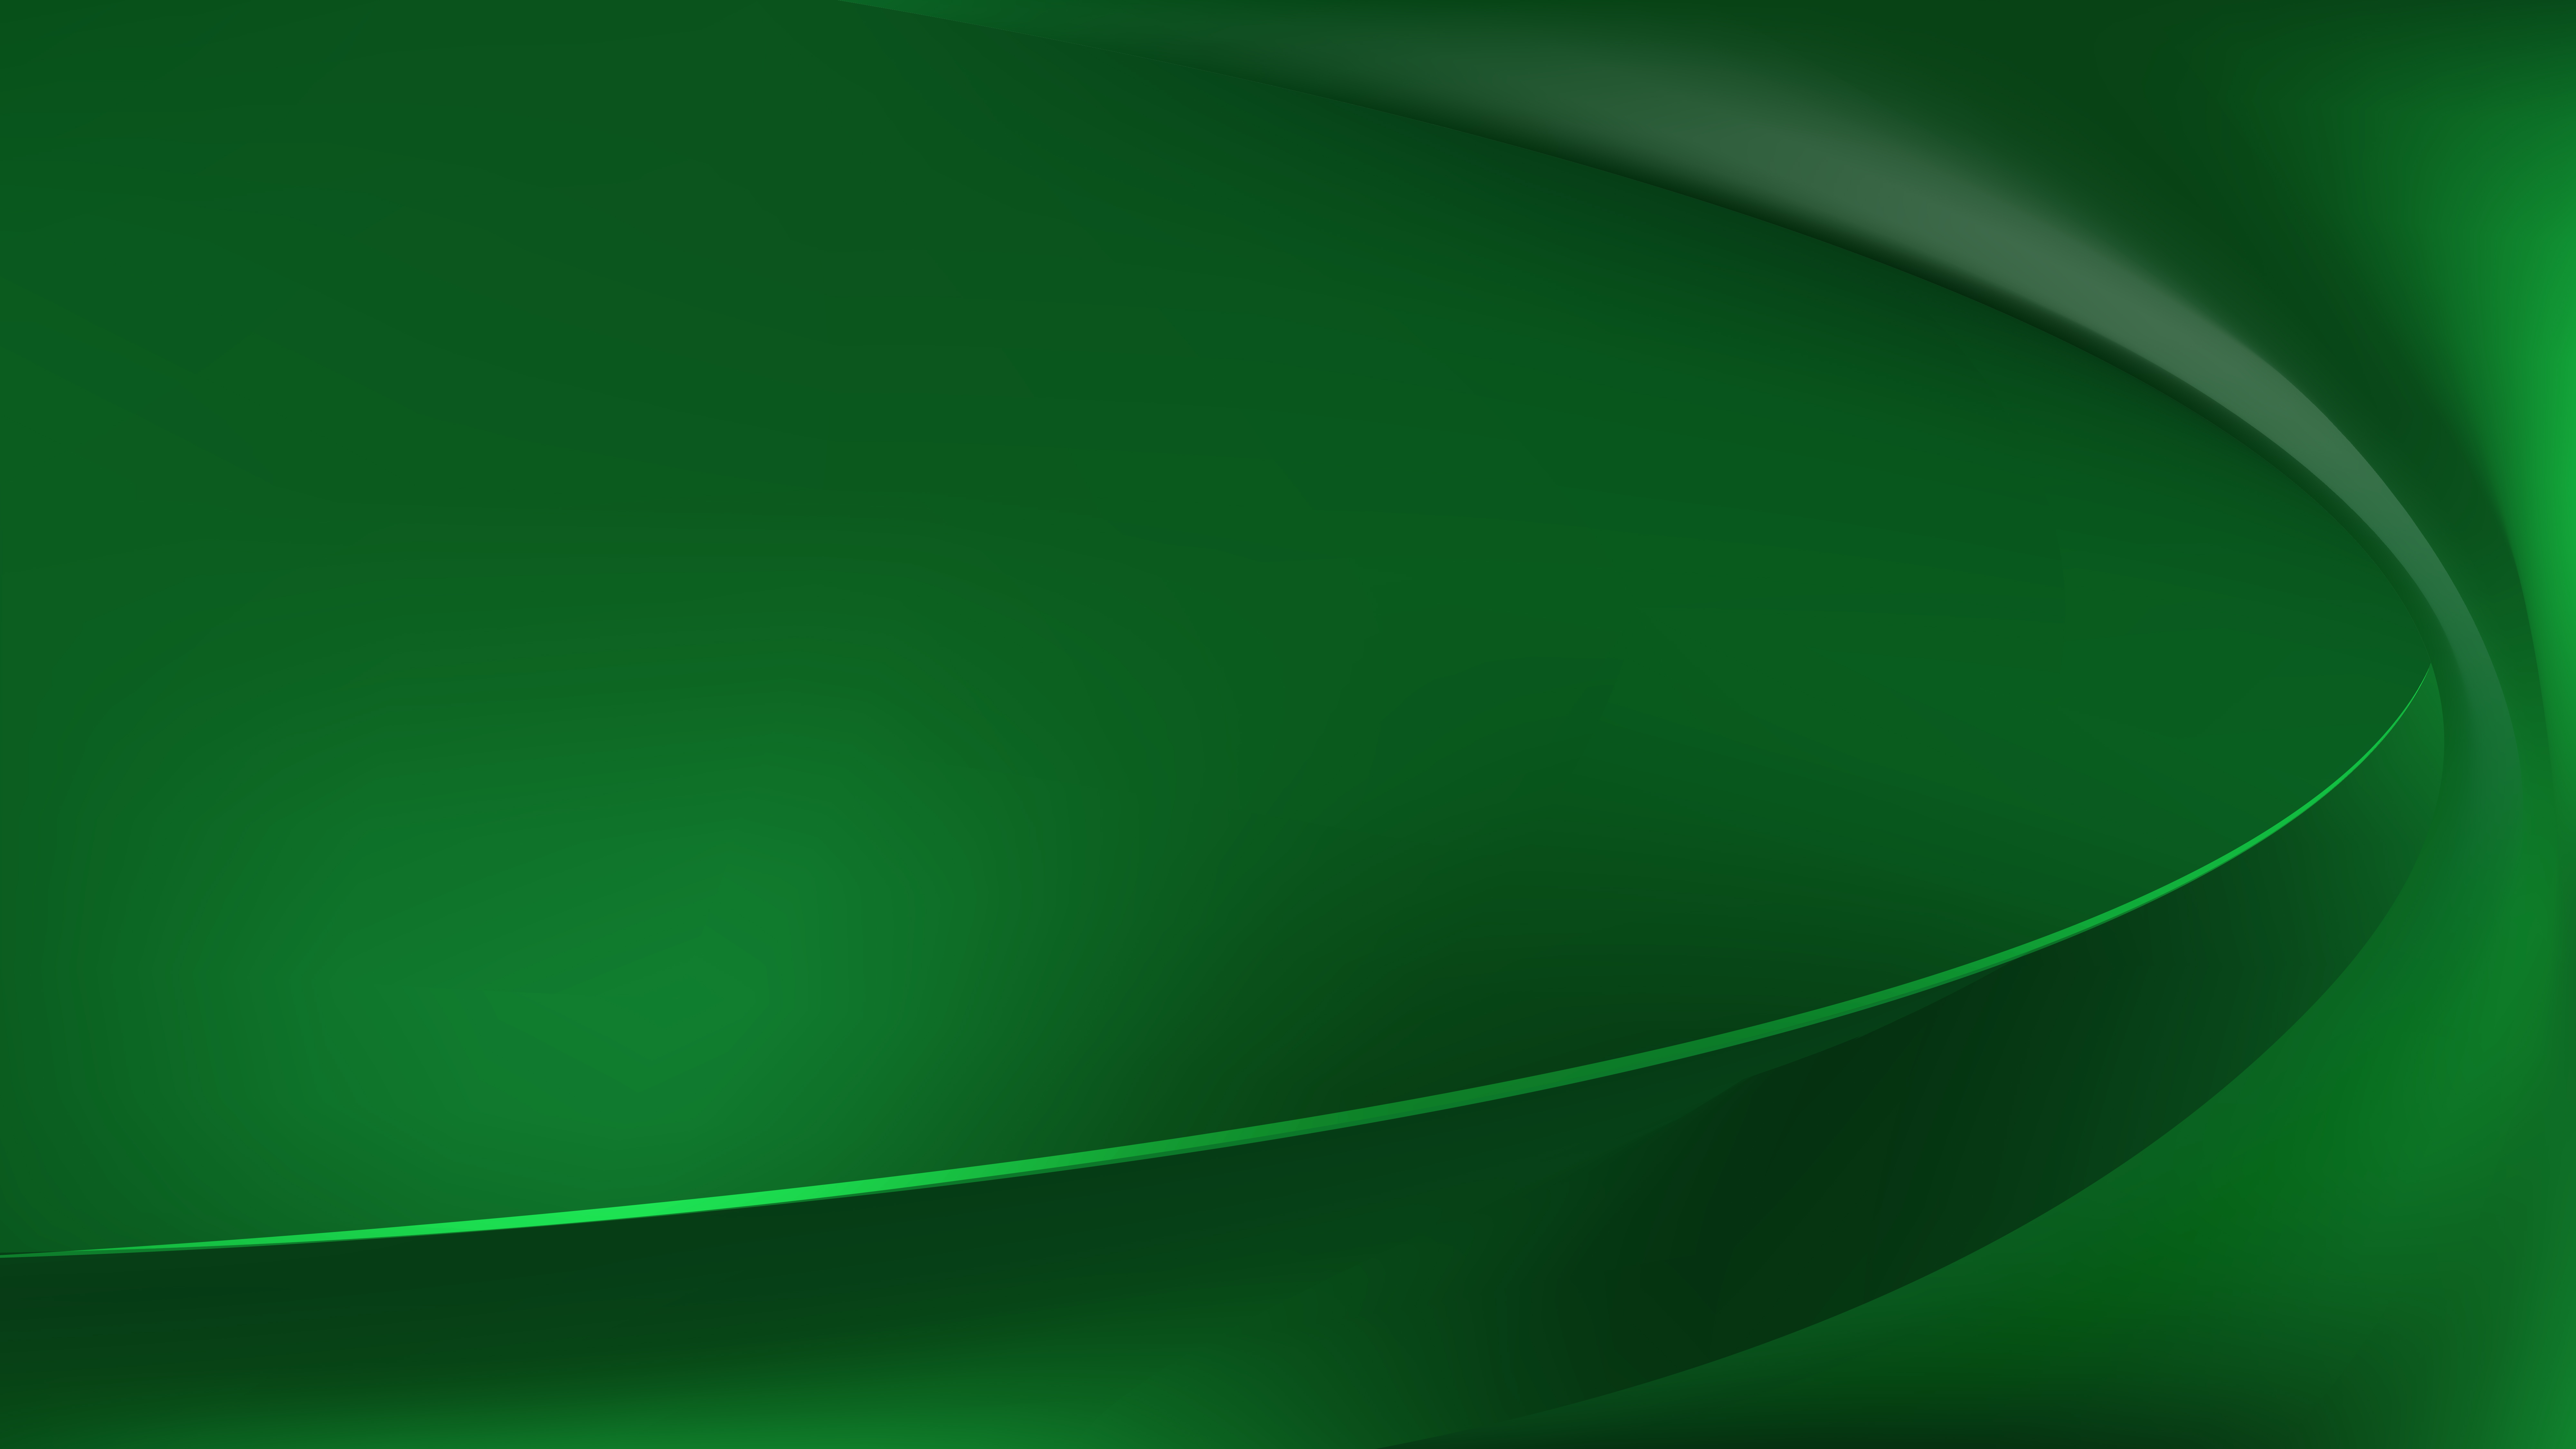 Free Dark Green Wave Background Image